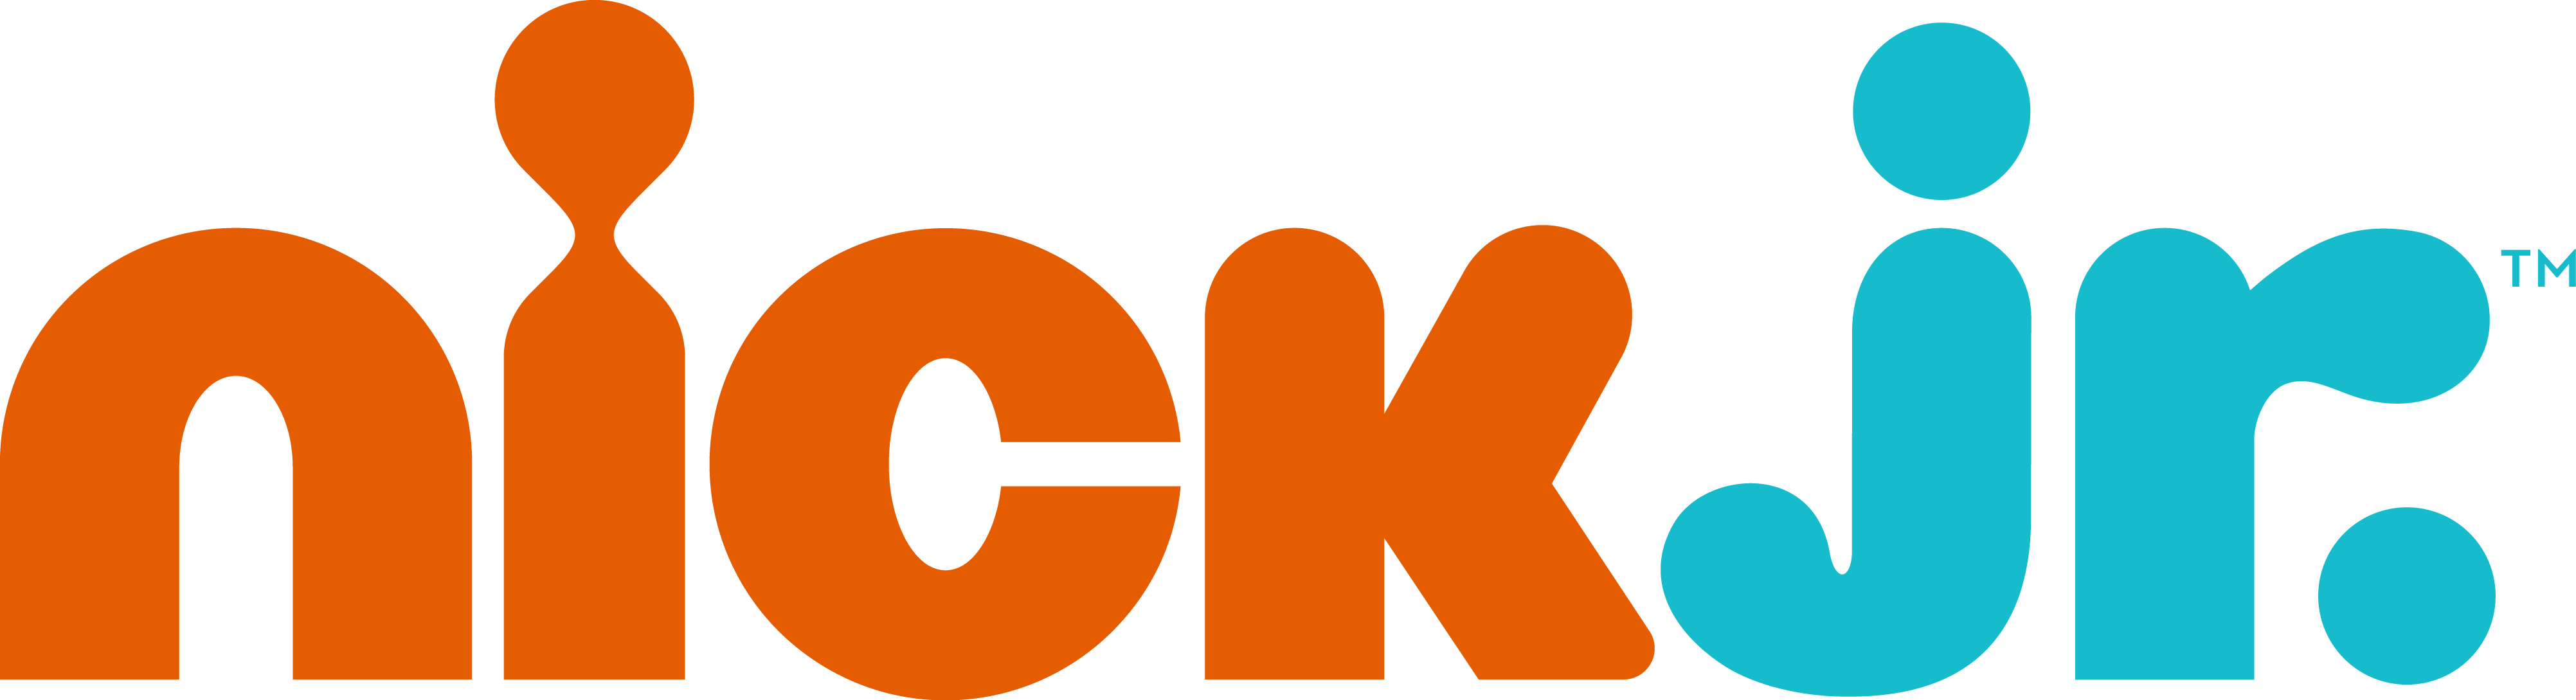 Nickjr. Logo